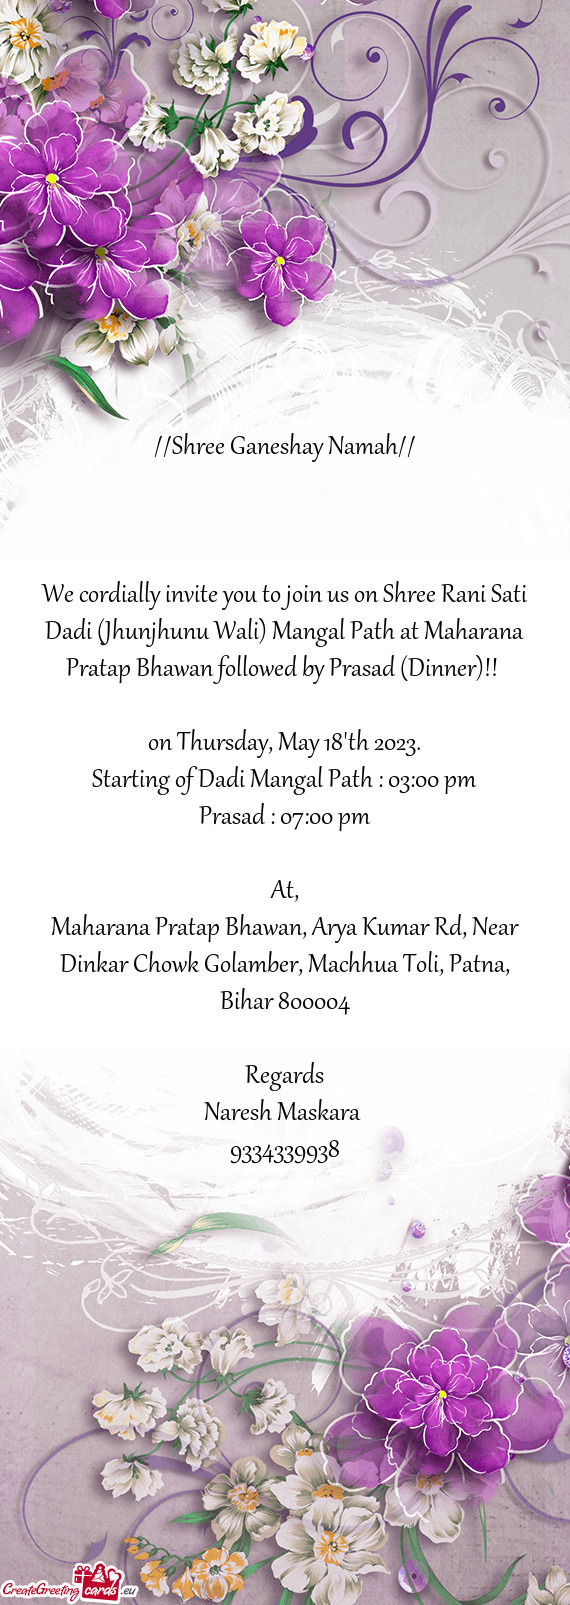 We cordially invite you to join us on Shree Rani Sati Dadi (Jhunjhunu Wali) Mangal Path at Maharana